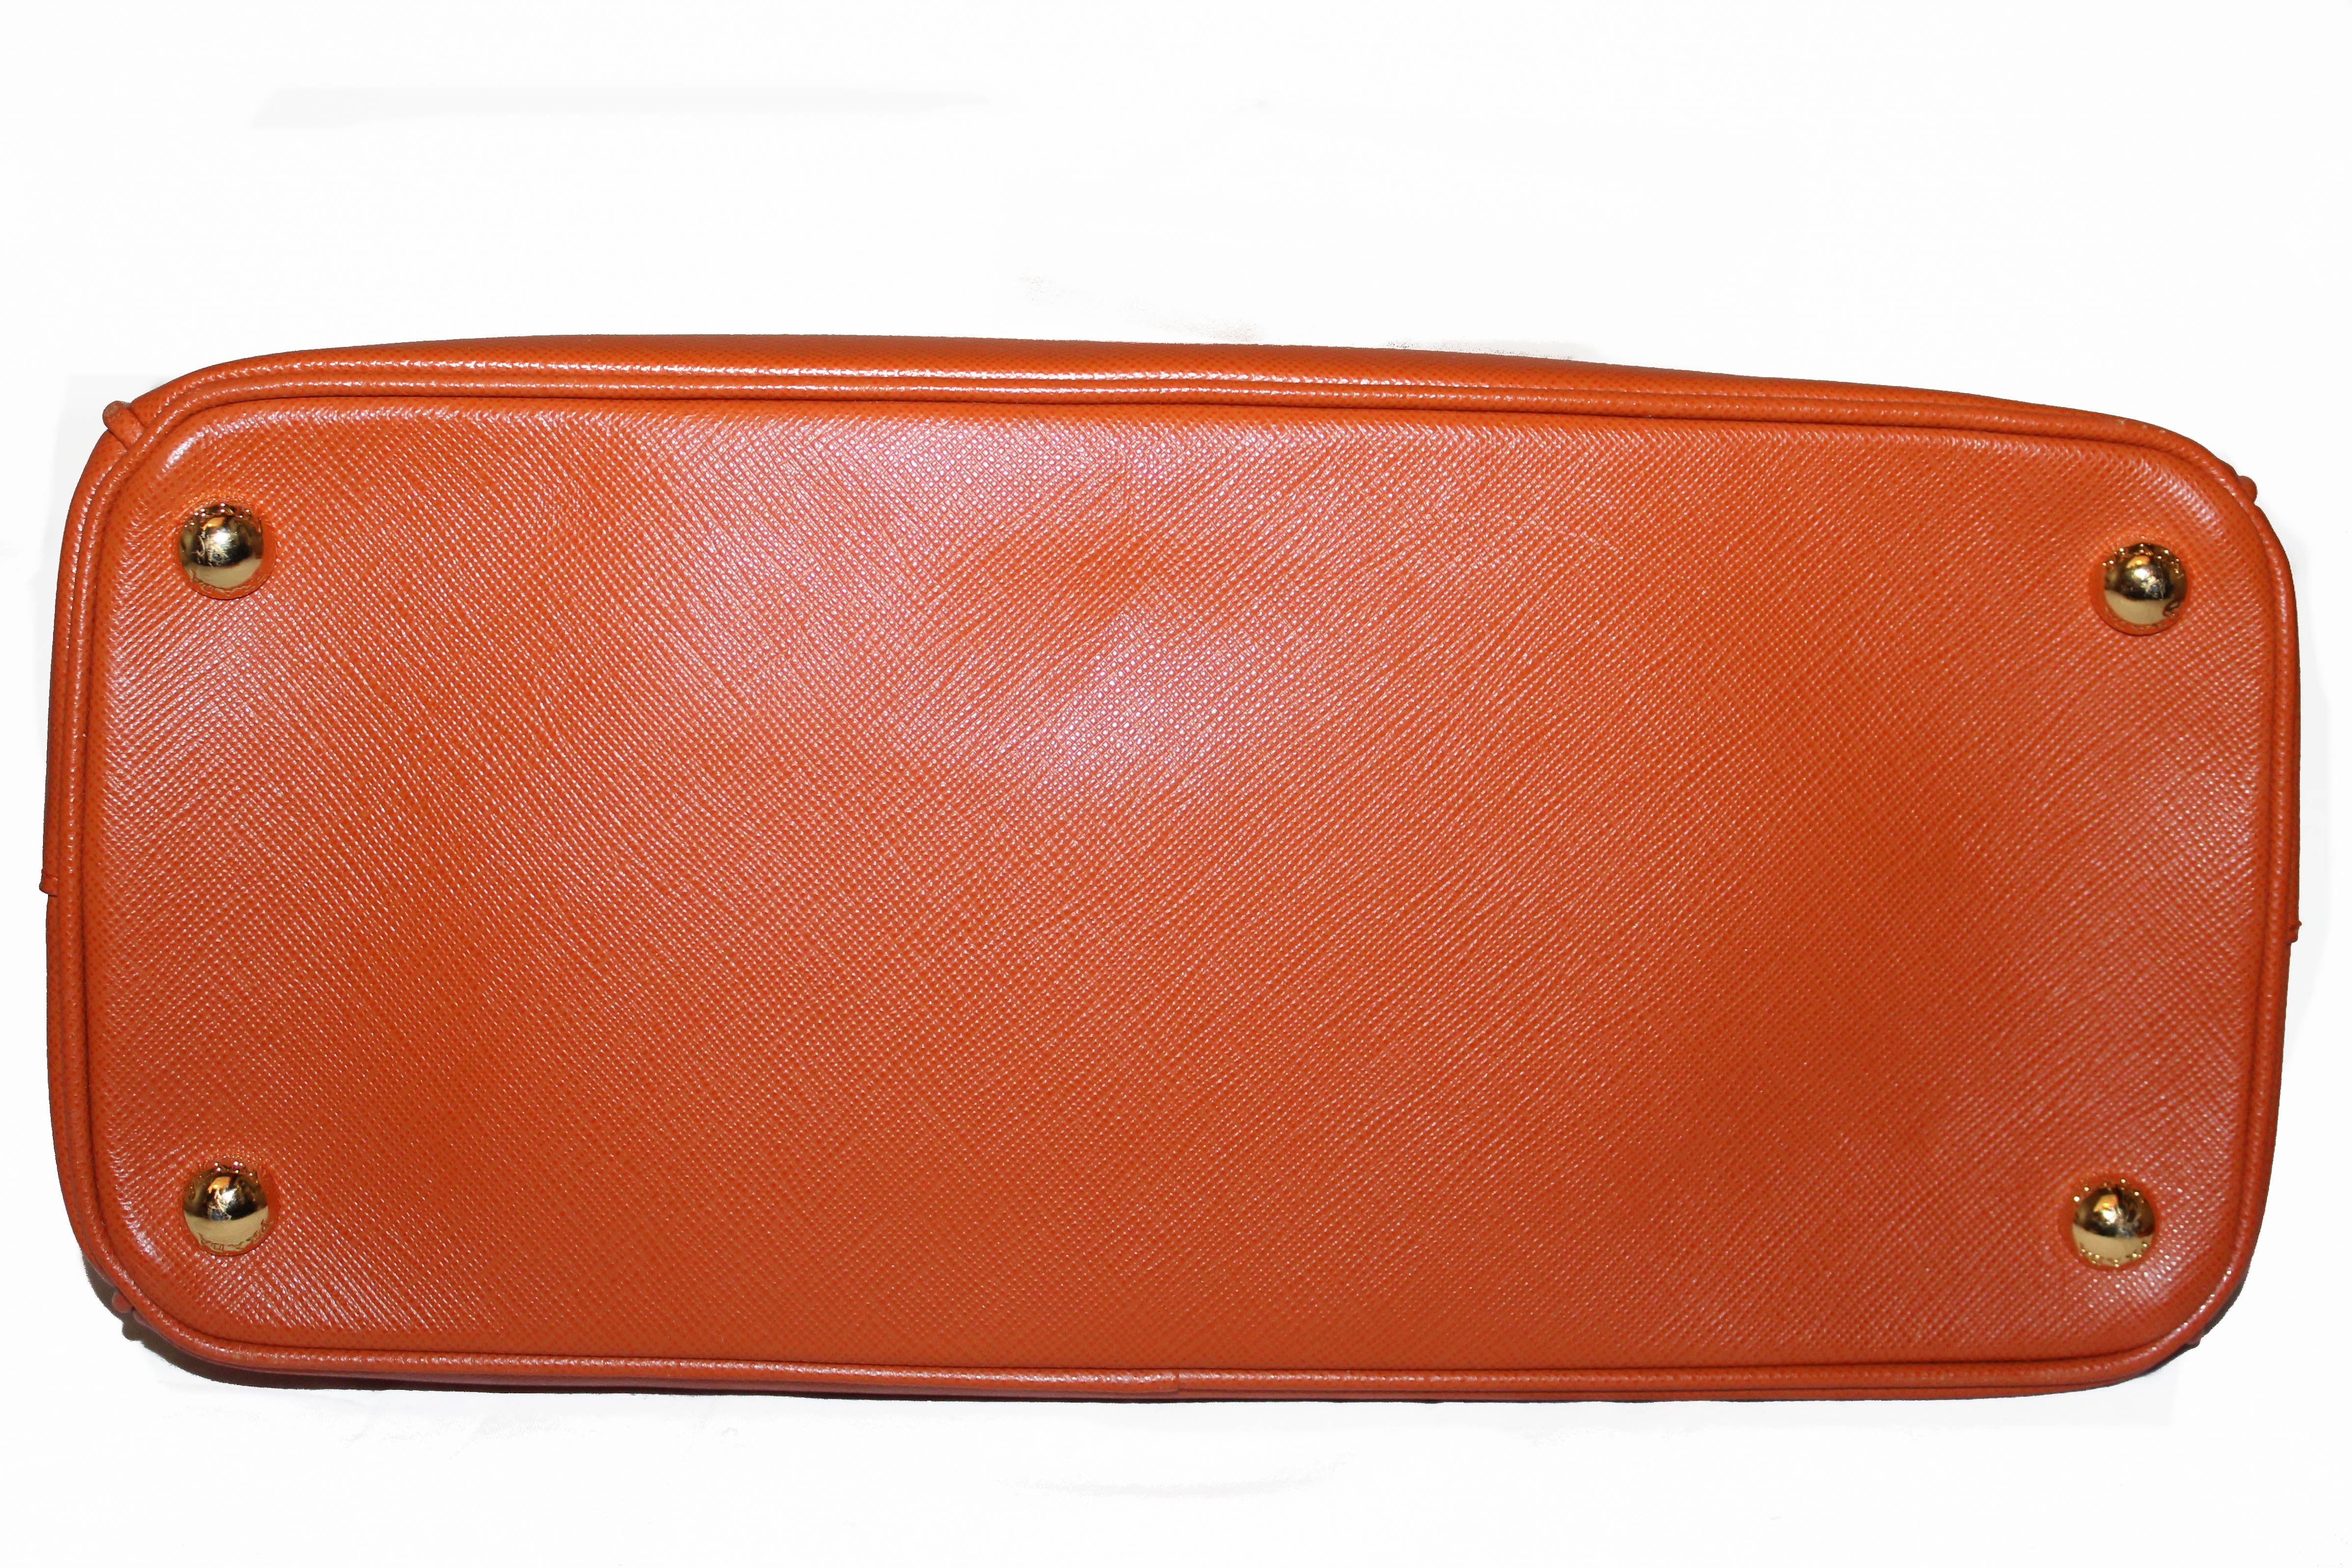 Authentic Prada Orange Saffiano Lux Leather Small Double Zip Tote Bag